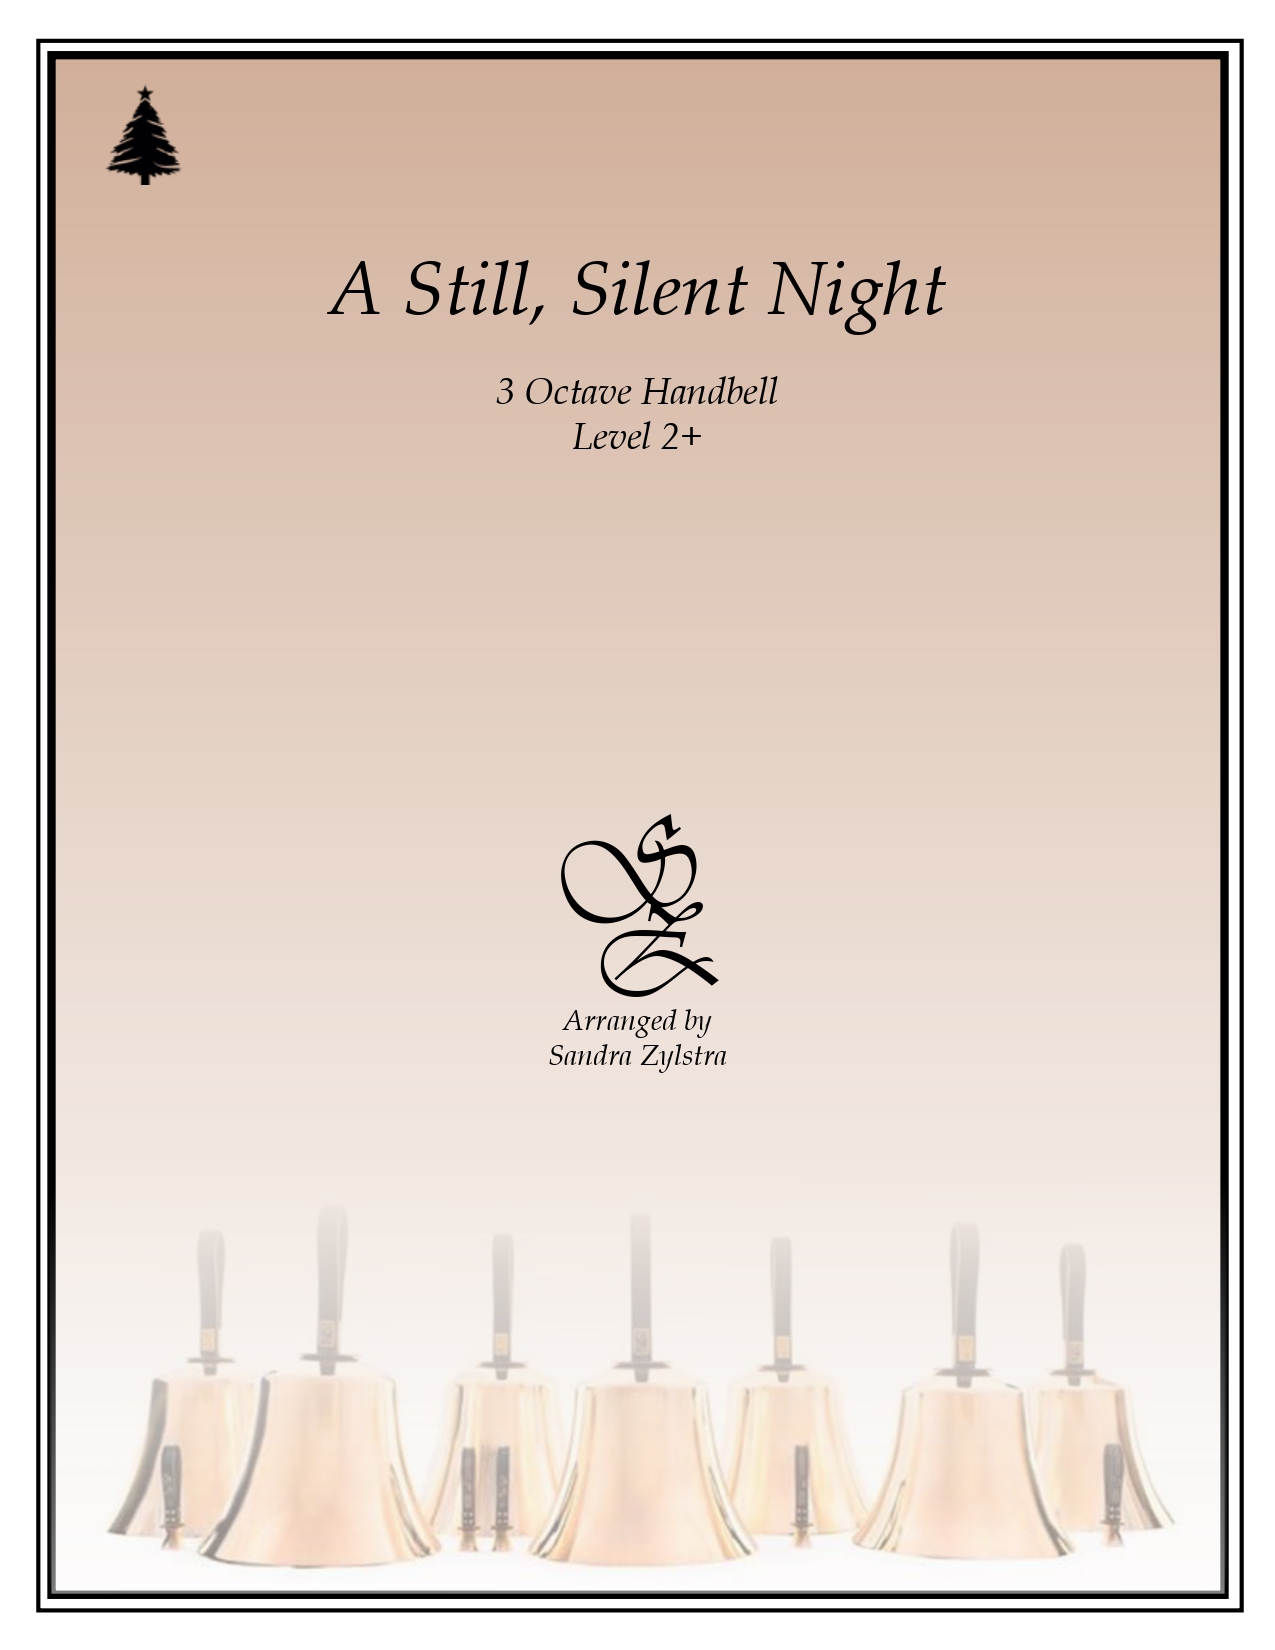 A Still, Silent Night -3 octave handbells - Sheet Music Marketplace